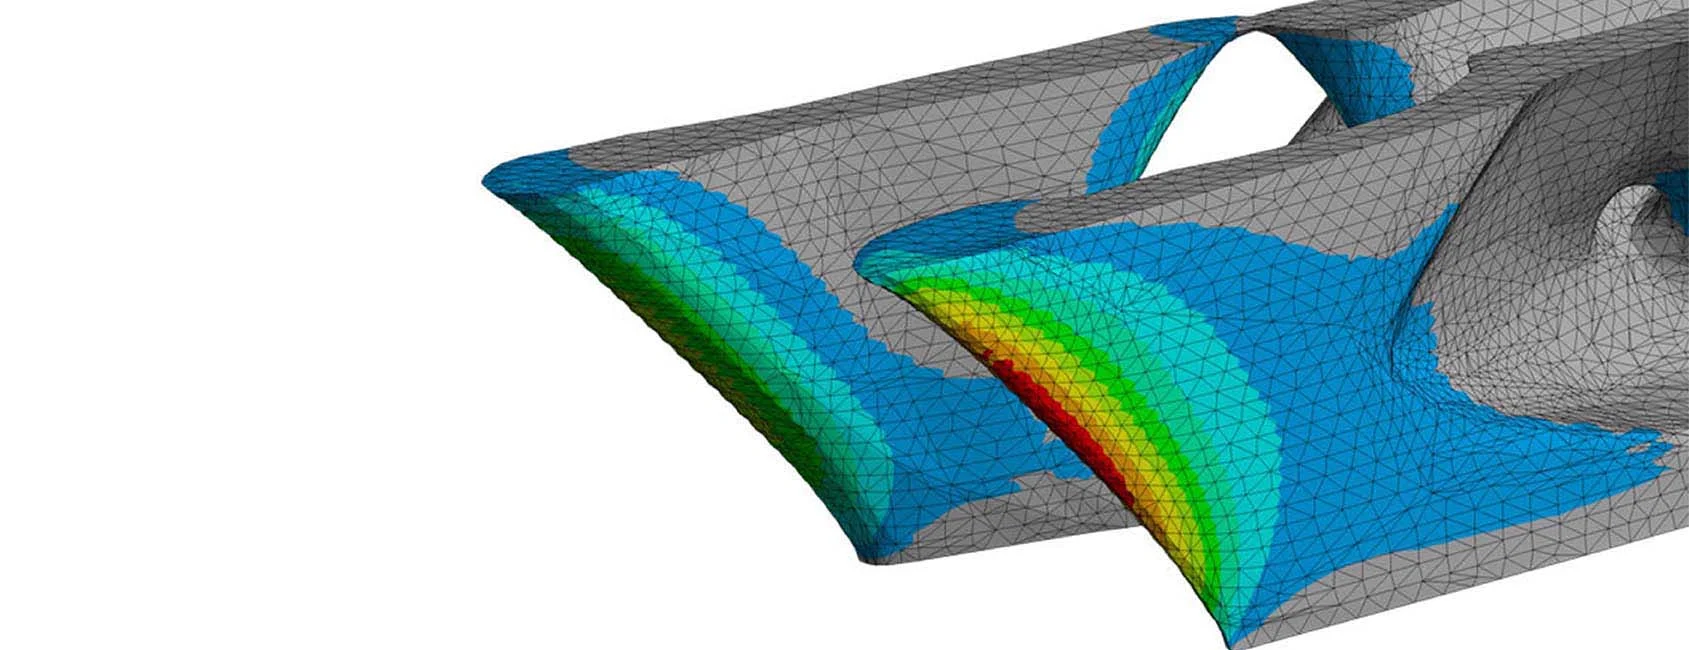 Aditivo | Simulación de Impresión 3D & Manufactura Aditiva